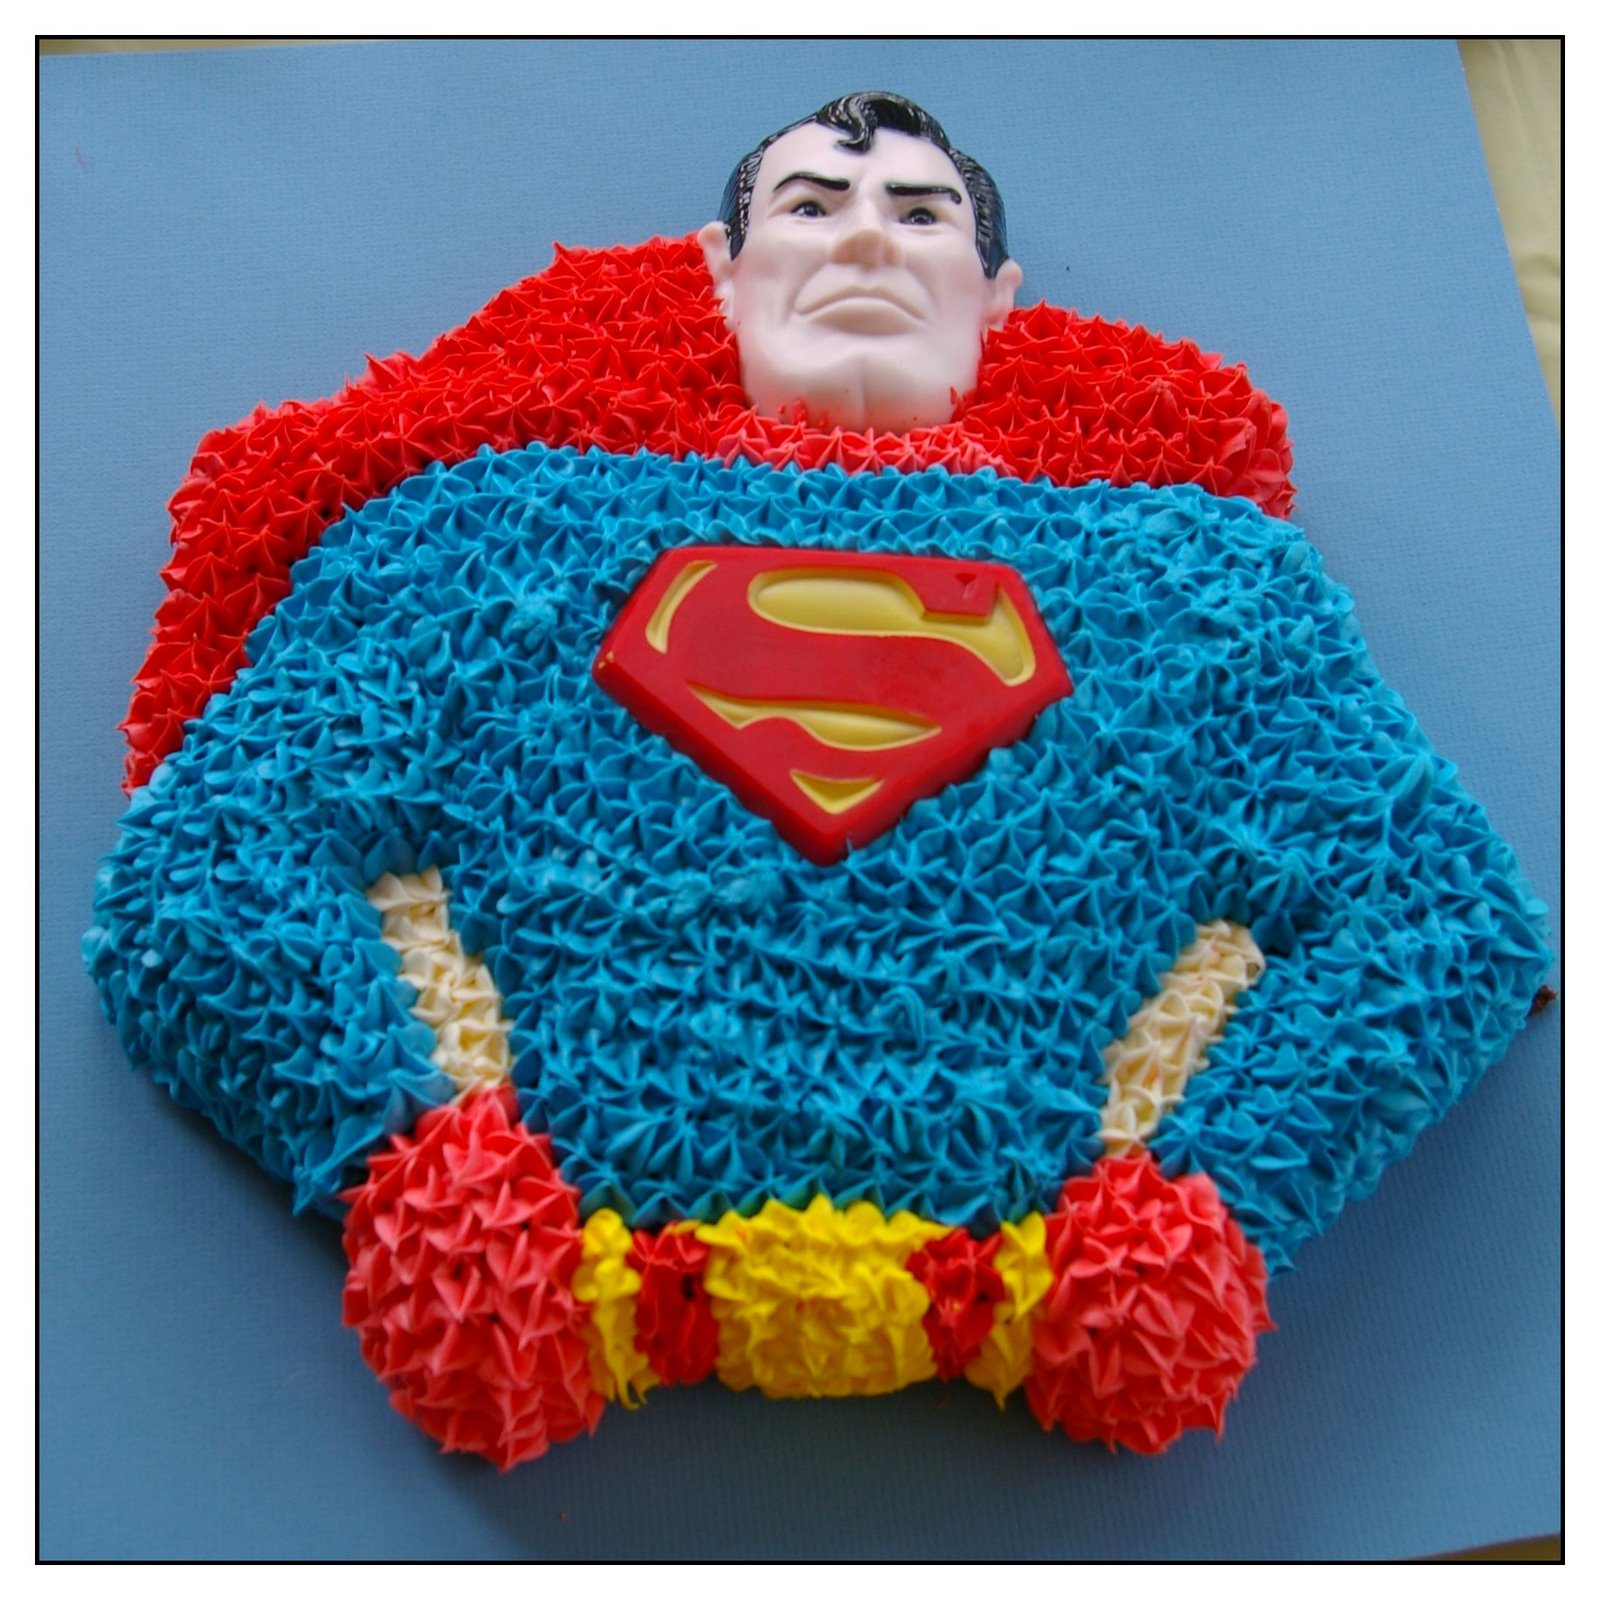 [Supermancake.jpg]